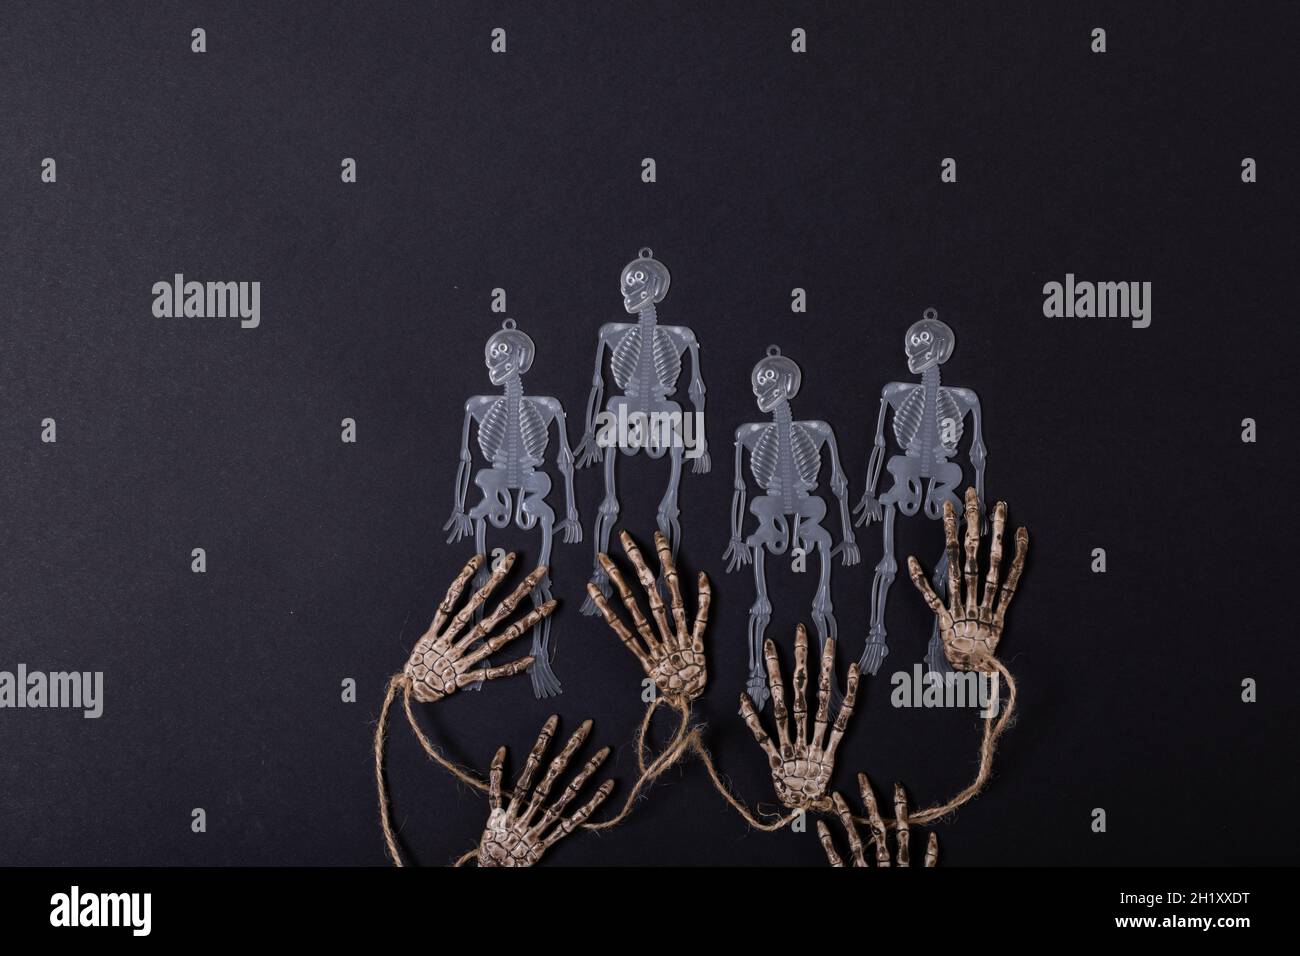 Composition de décorations d'halloween avec des squelettes et des mains sur fond noir Banque D'Images